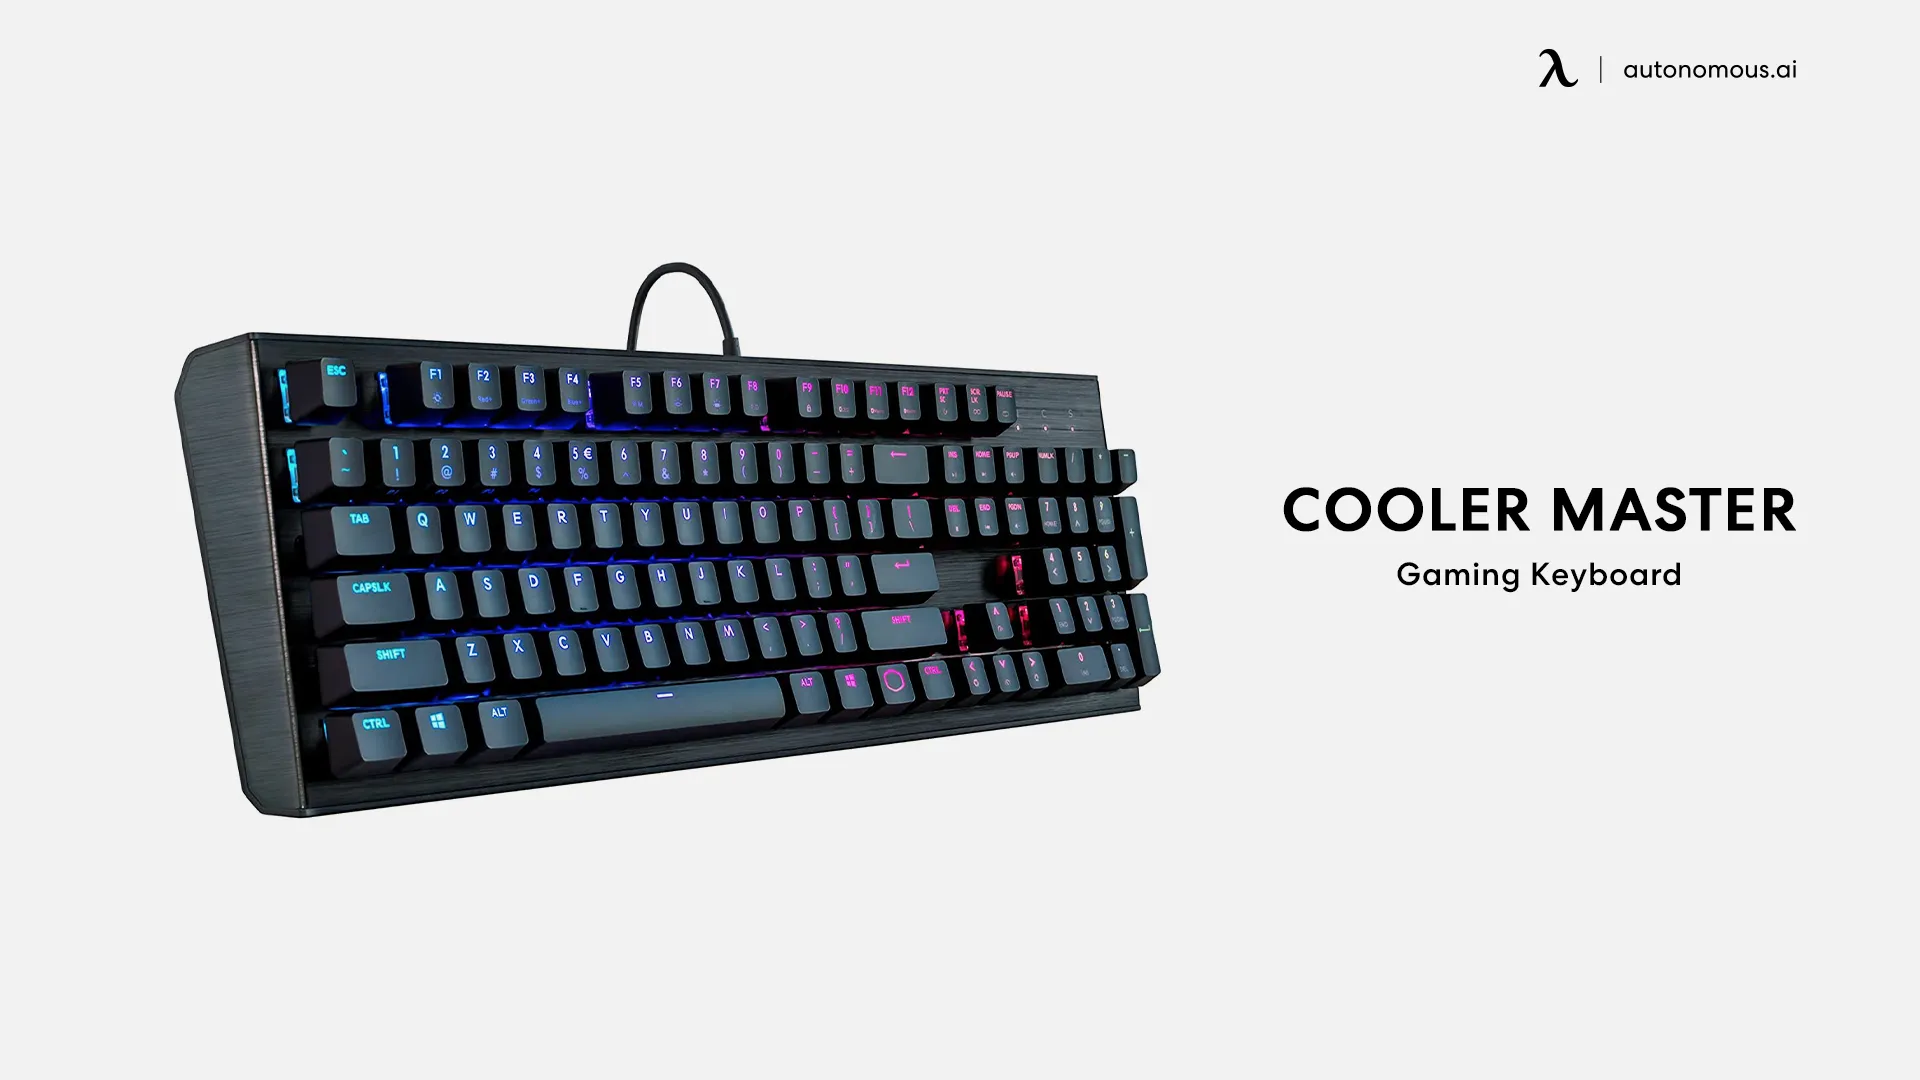 Cooler Master gaming keyboard and tray